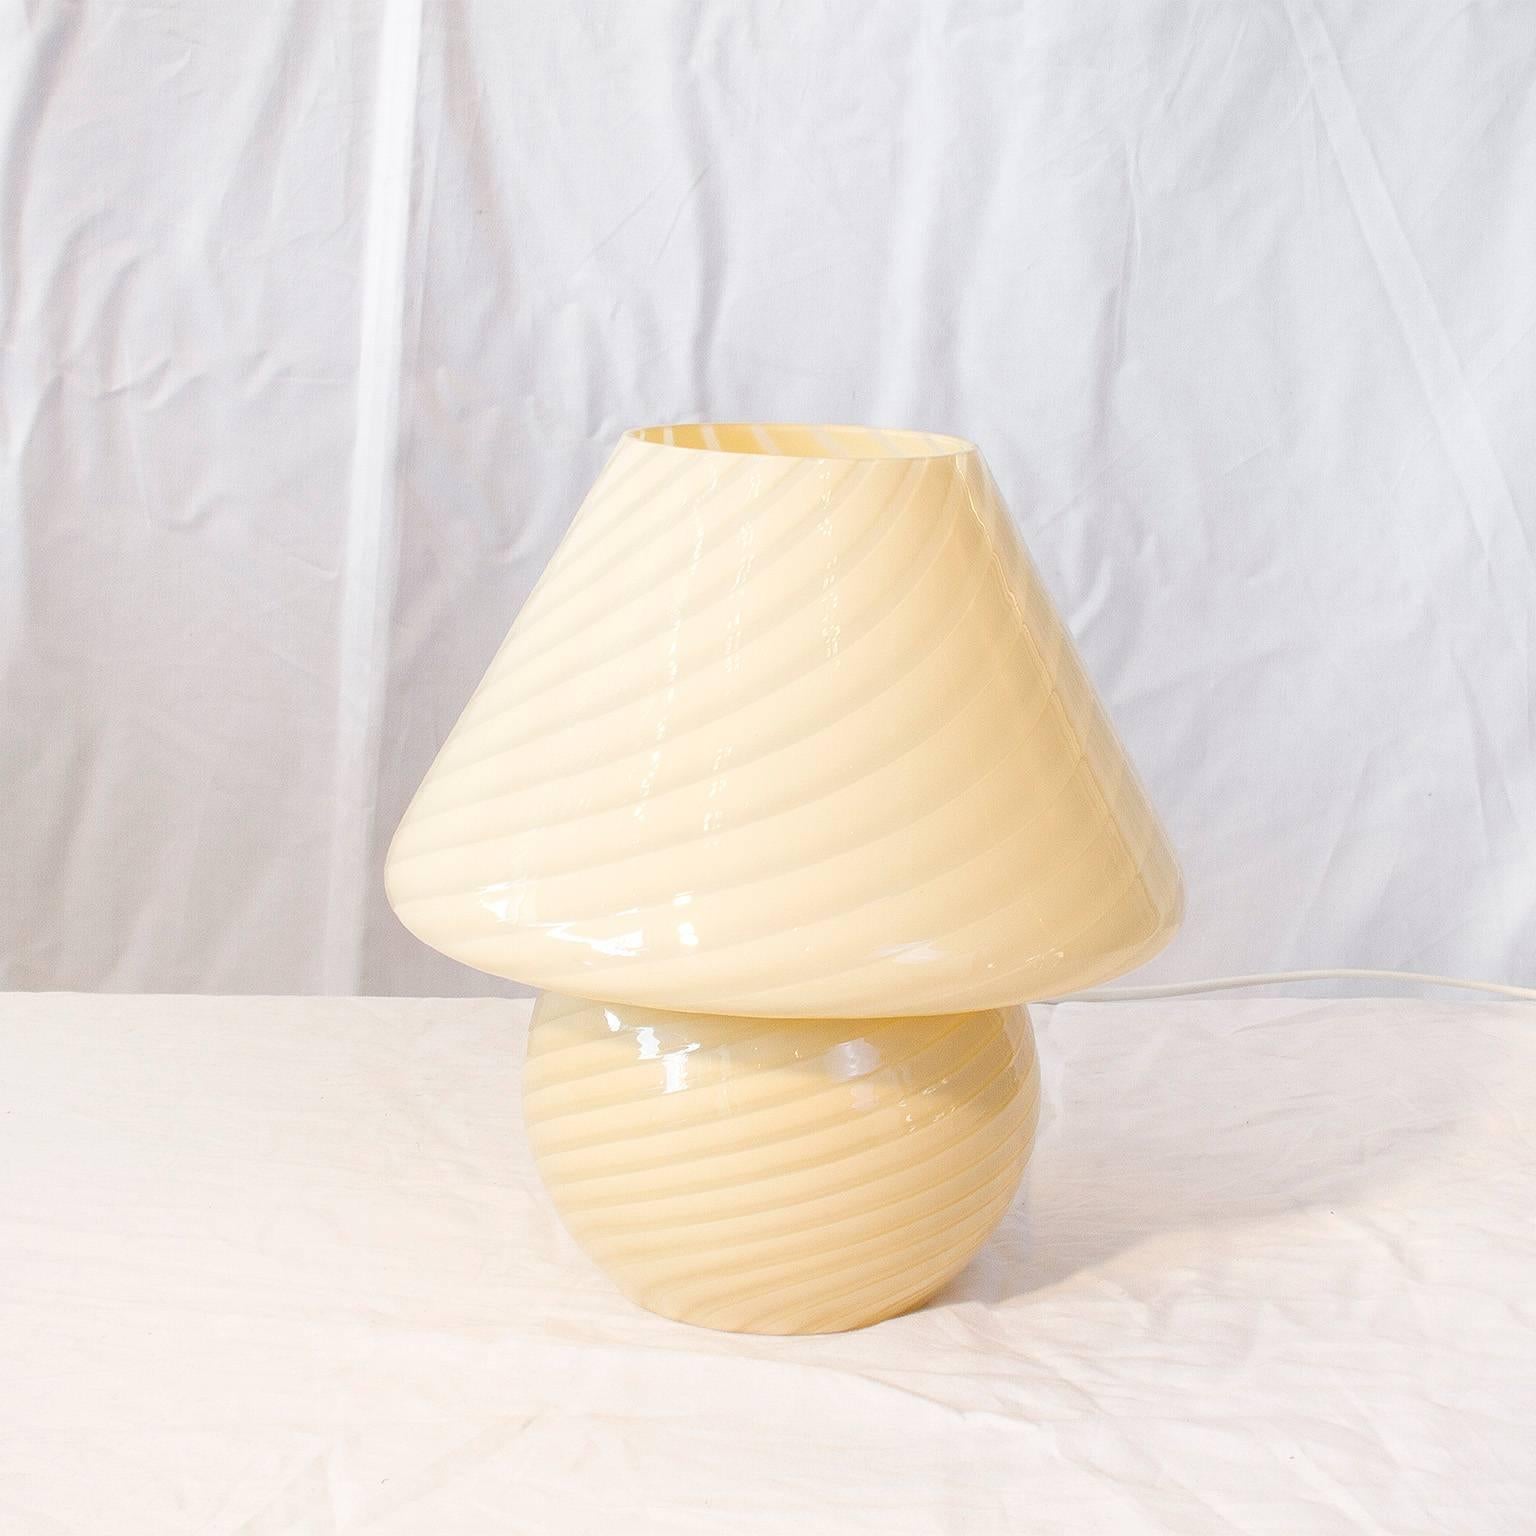 Cream swirled Murano glass lamp in mushroom form by Vetri.